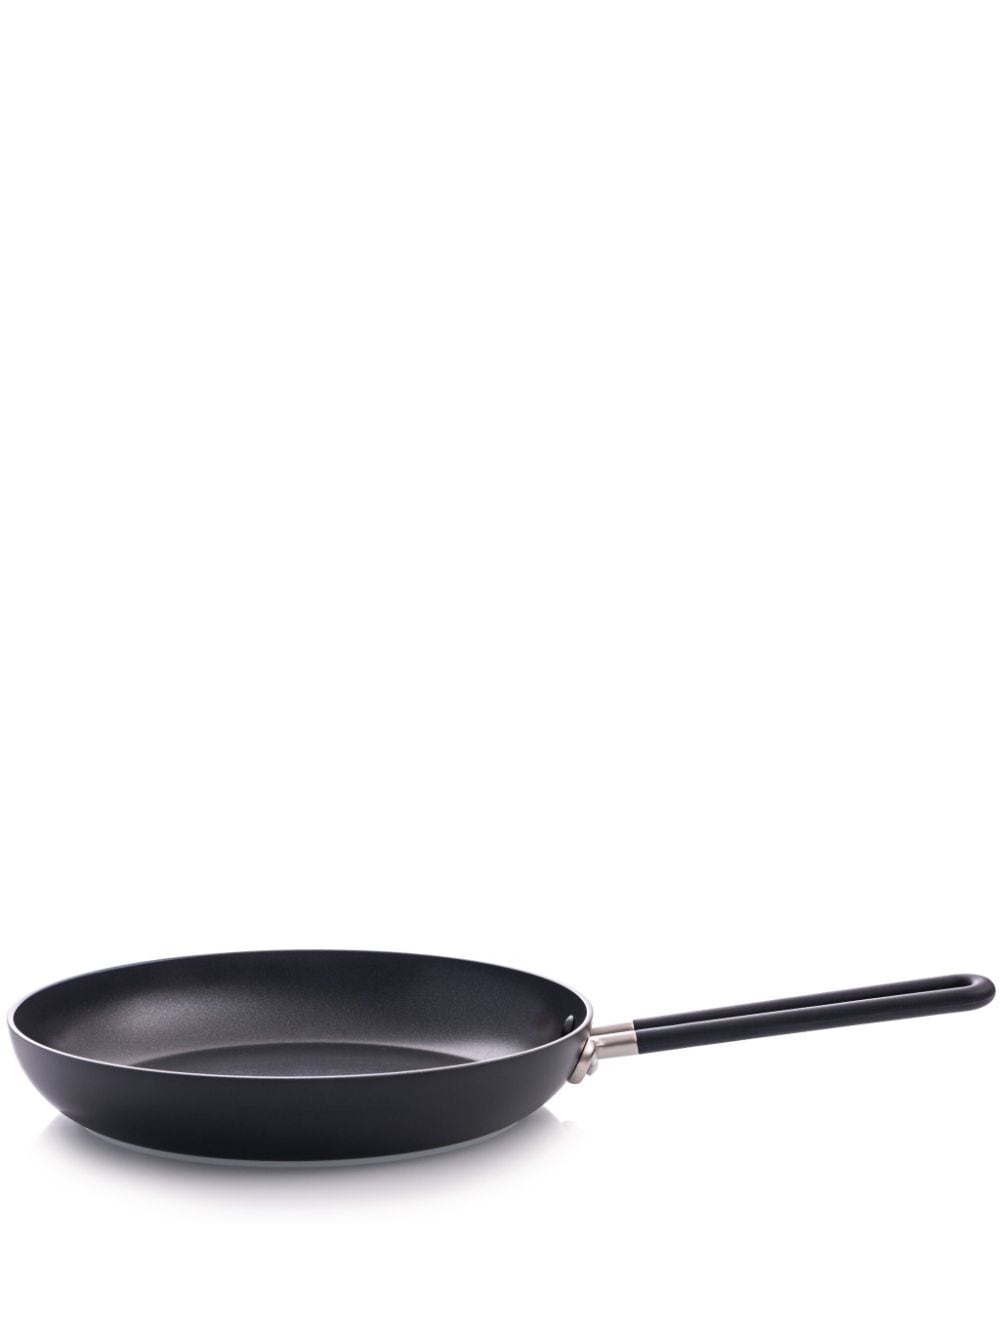 Alessi Sten frying pan (28cm) - Black von Alessi